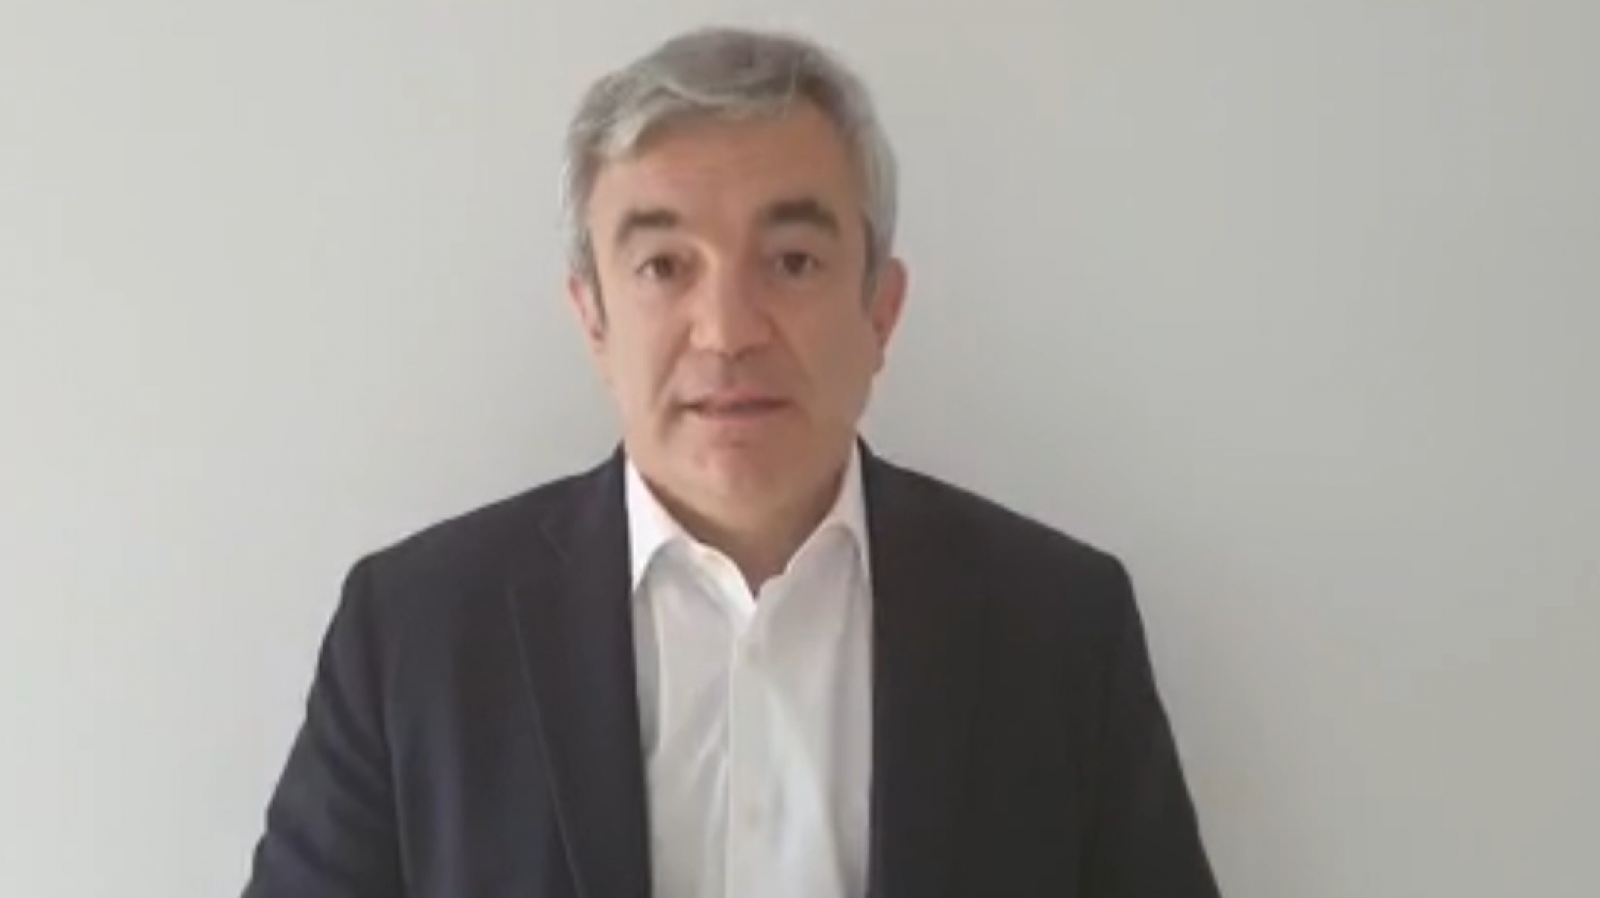 Luis Garicano, eurodiputado de Ciudadanos: "La respuesta de Europa está a la altura de la crisis que estamos viviedo" - RTVE.es